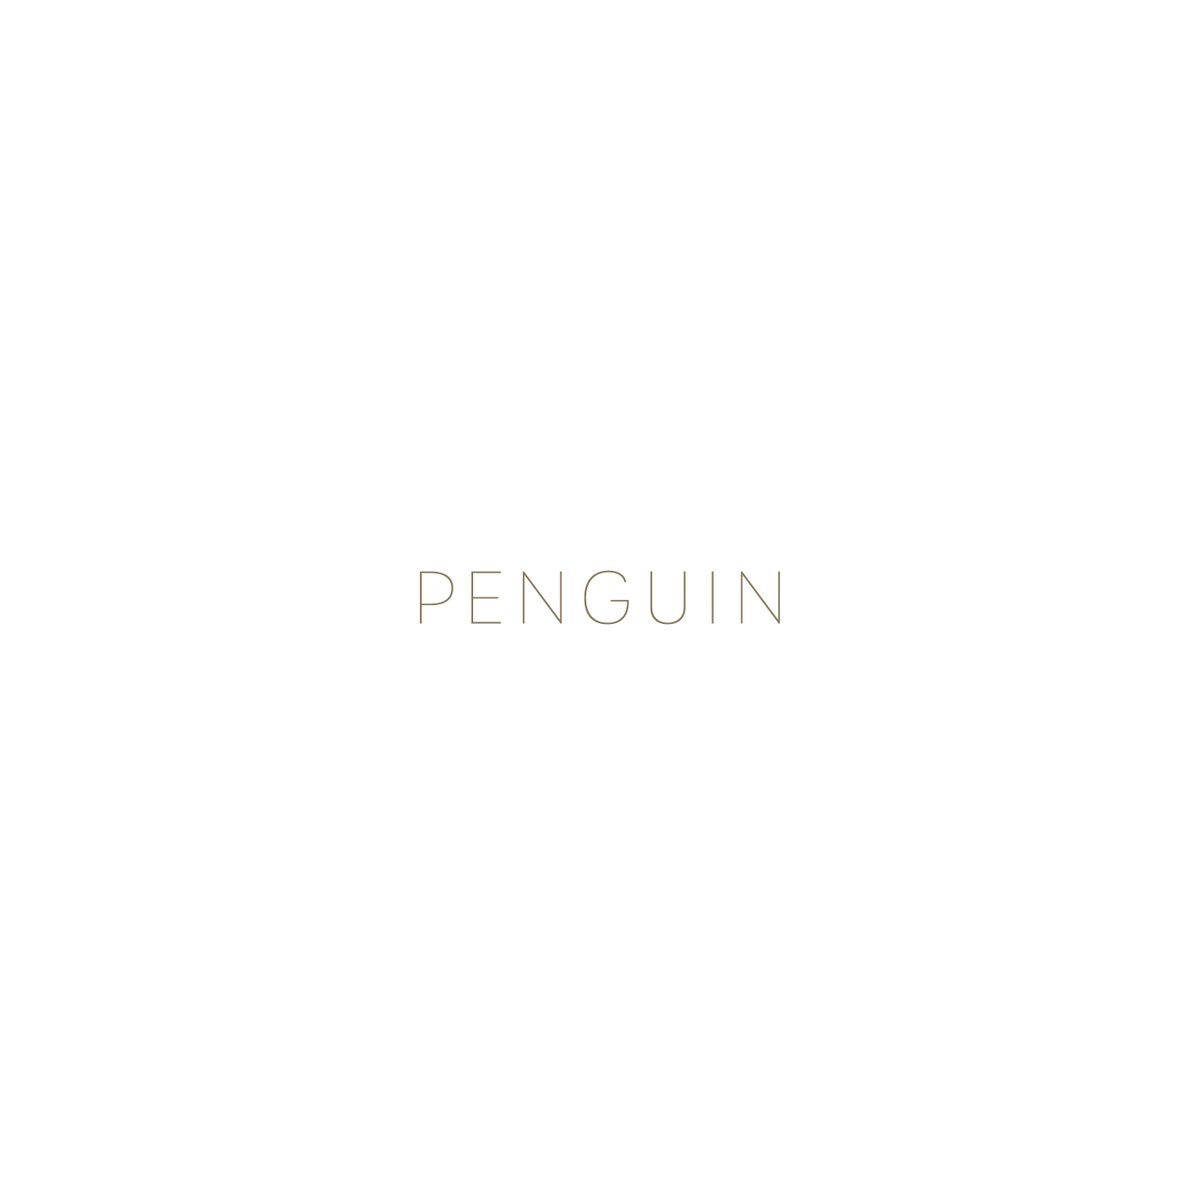 - PENGUIN

#artworks #dearrenemagritte
#世界ペンギンデー #ペンギンの日 #と聞いて 